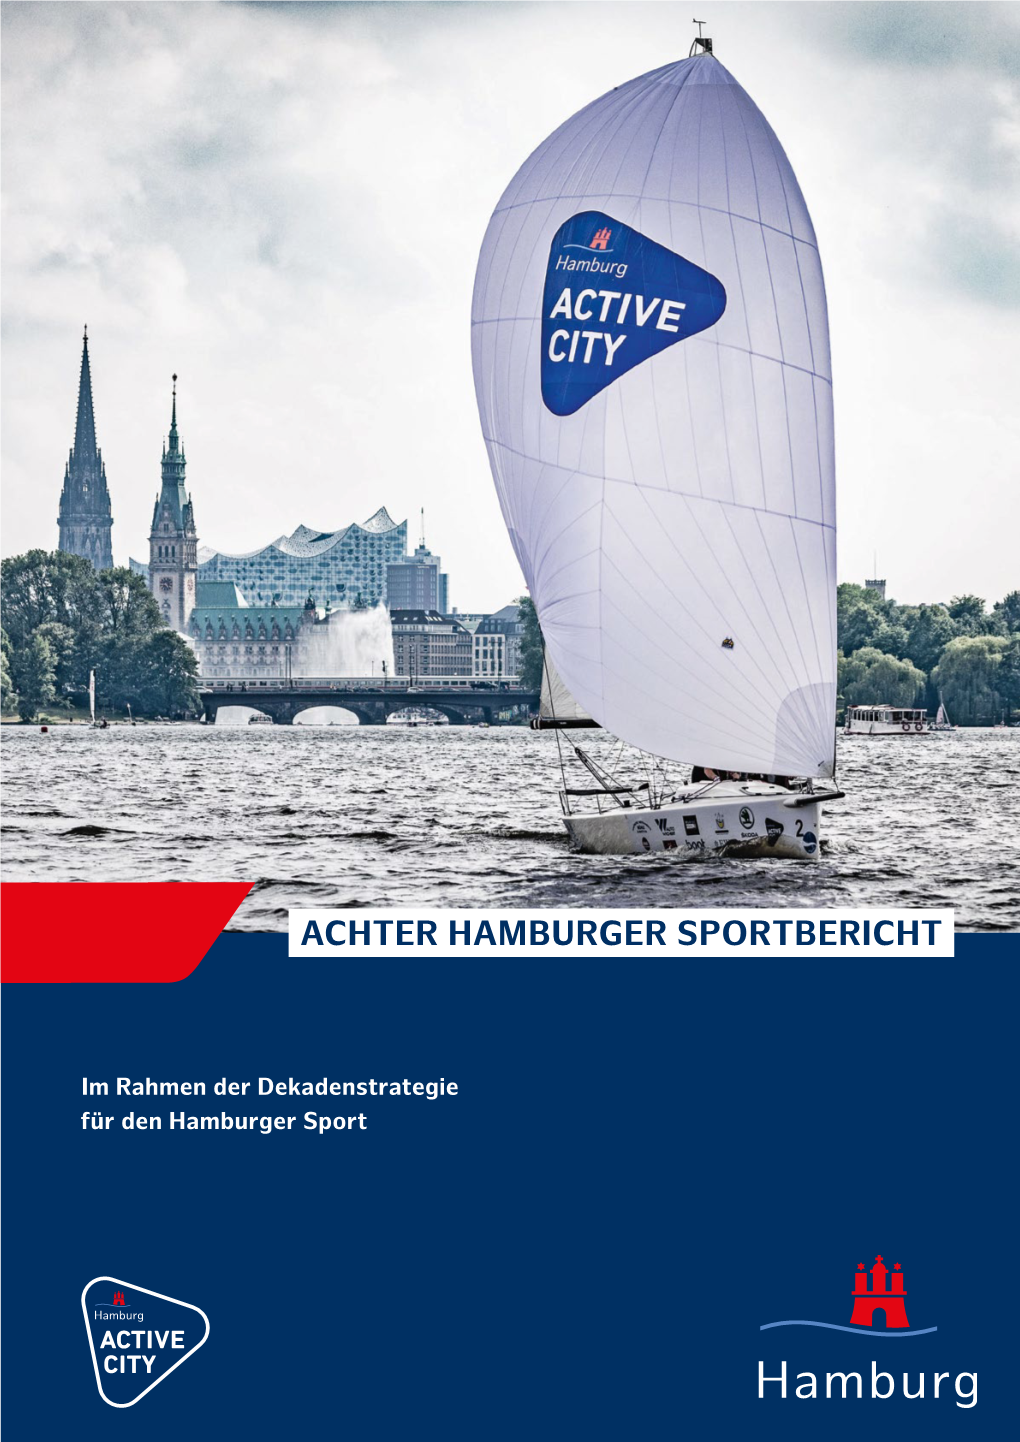 Achter Hamburger Sportbericht